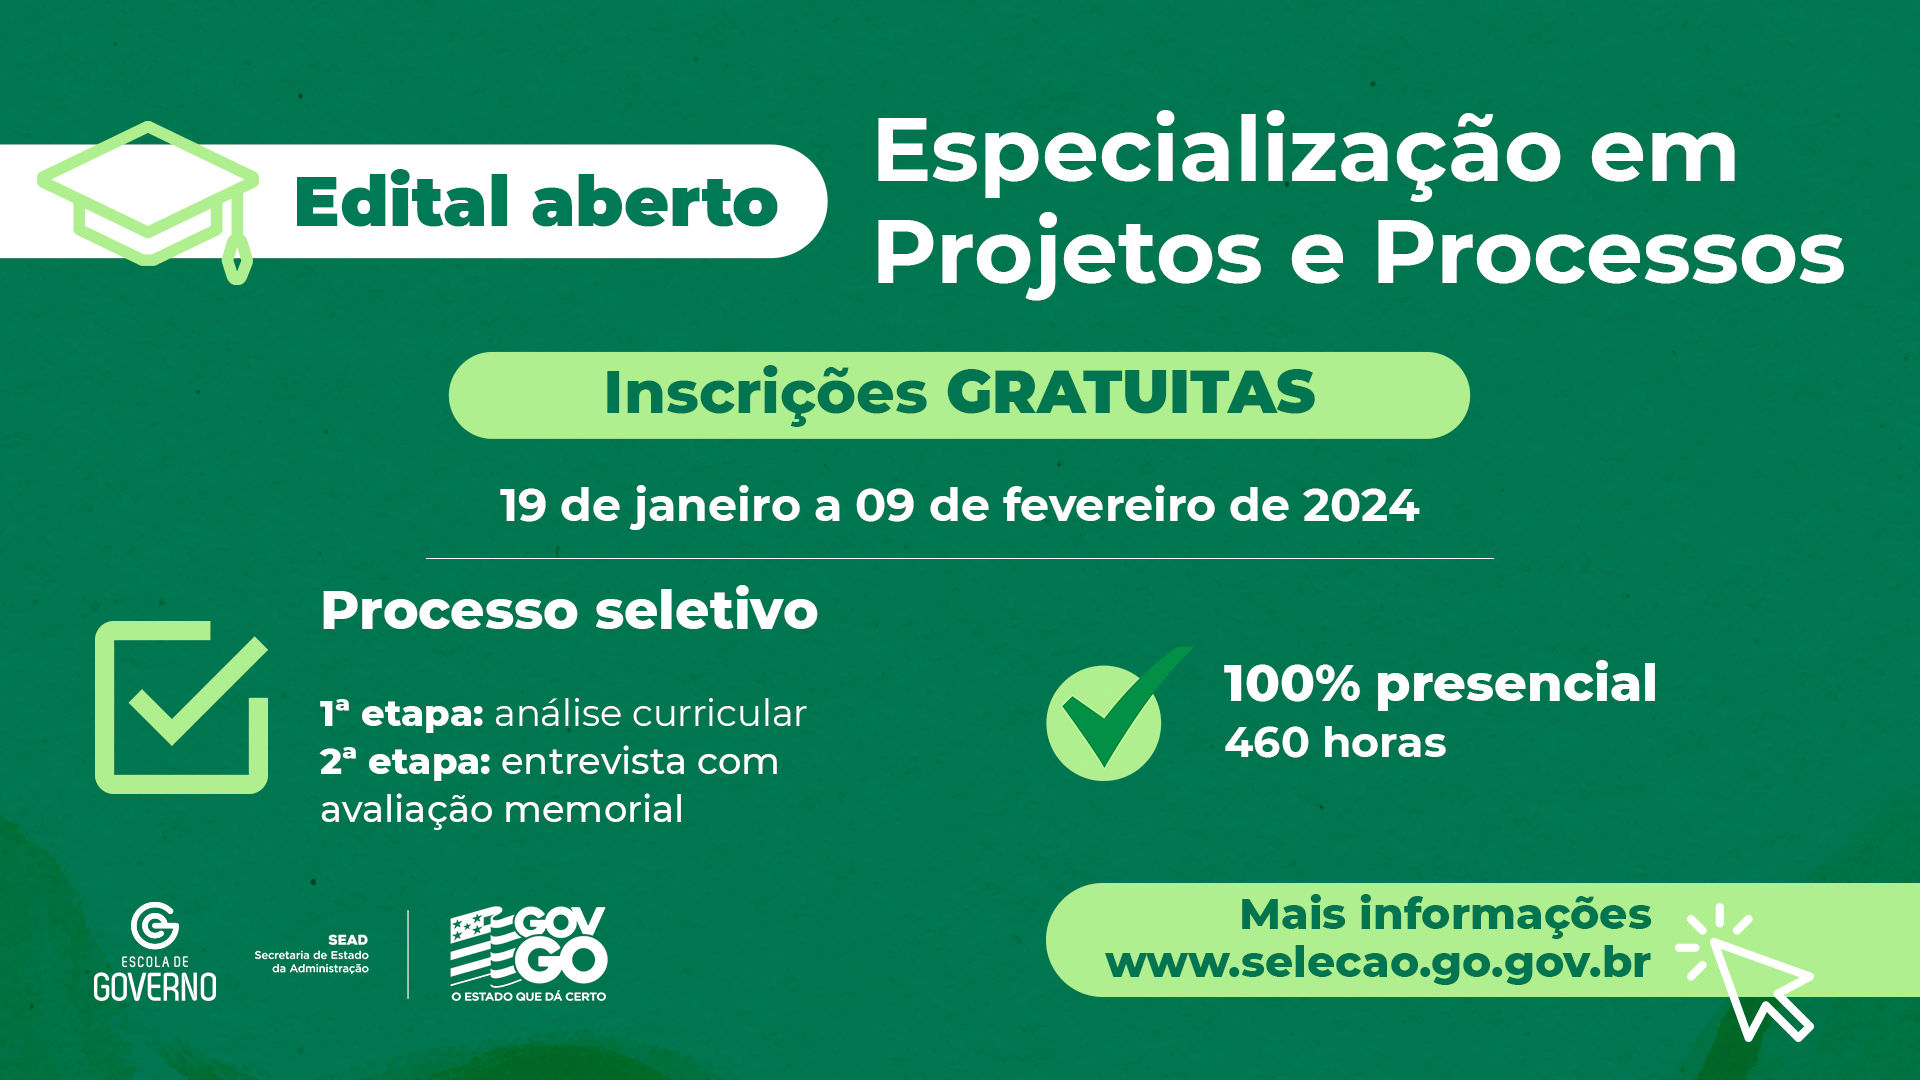 Governo de Goiás lança edital para curso de especialização em Projetos e Processos para servidores estaduais